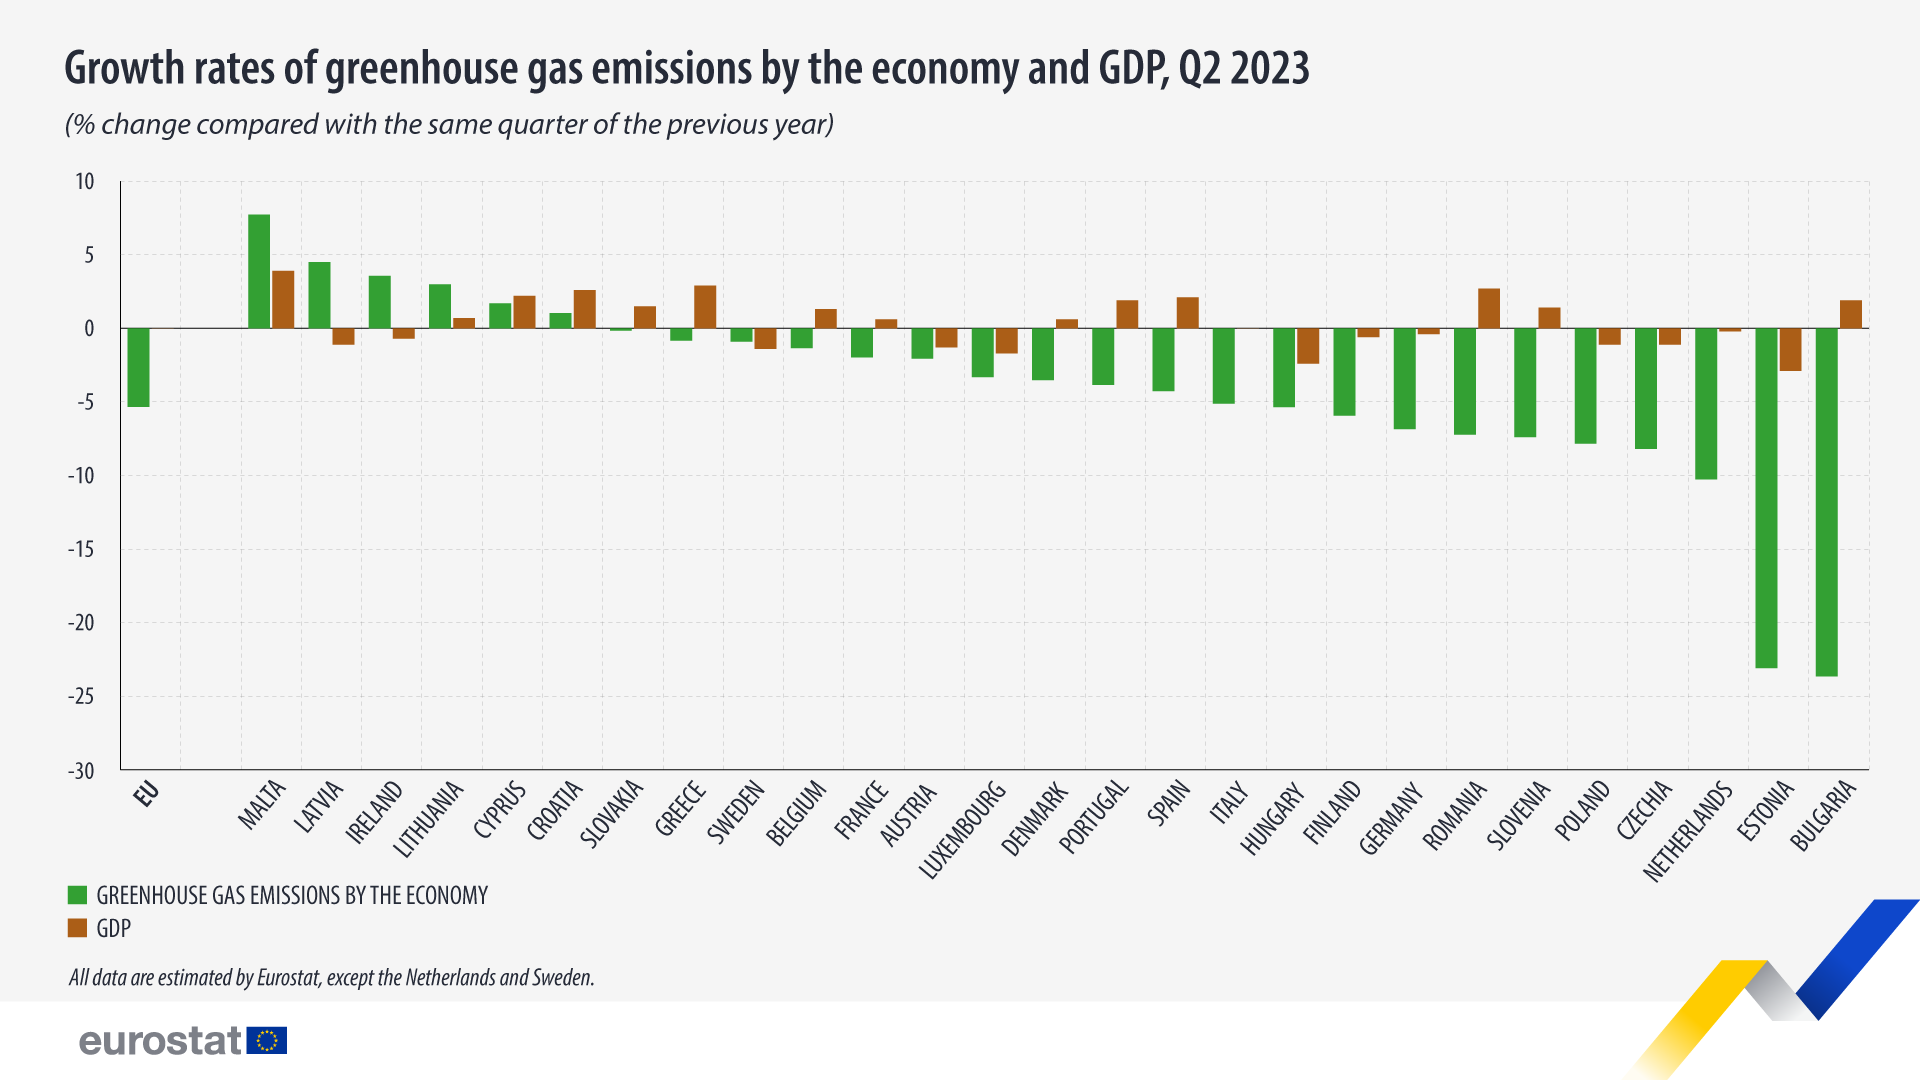 Grafico a barre: tassi di crescita delle emissioni di gas serra per economia e PIL, variazione percentuale rispetto allo stesso trimestre dell'anno precedente, secondo trimestre 2023